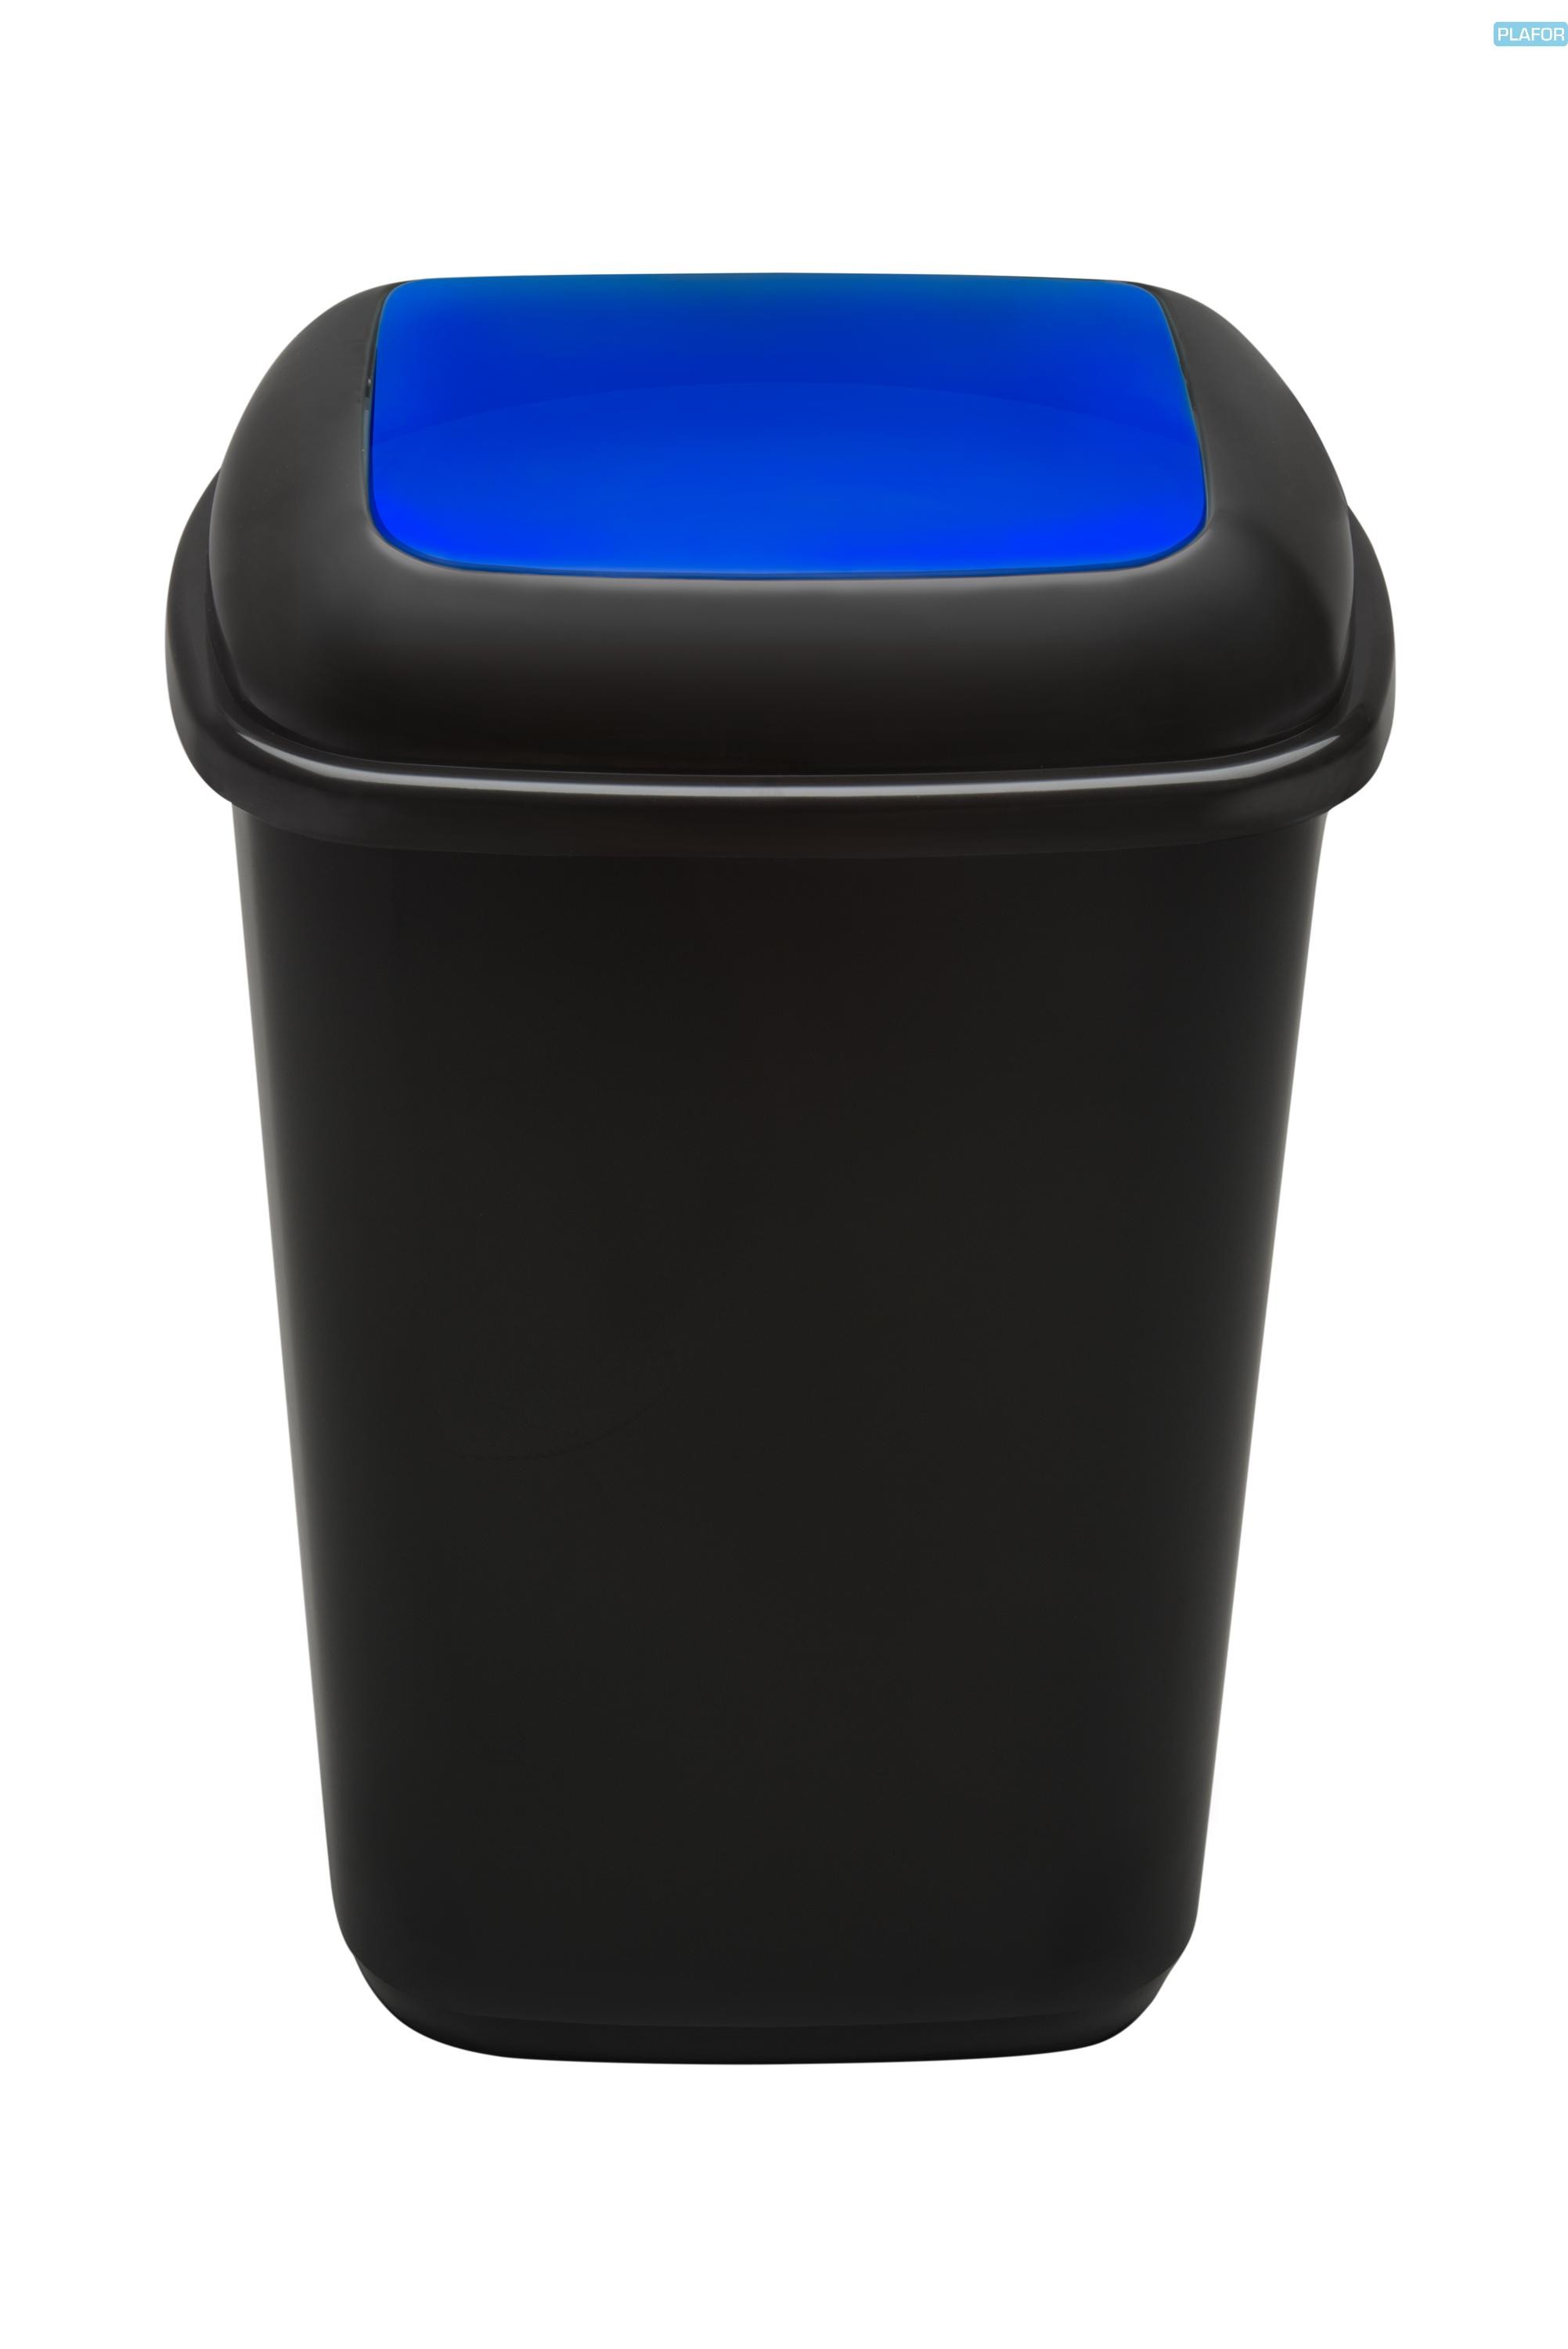 Cos plastic reciclare selectiva, capacitate 28l, PLAFOR Quatro - negru cu capac albastru - hartie